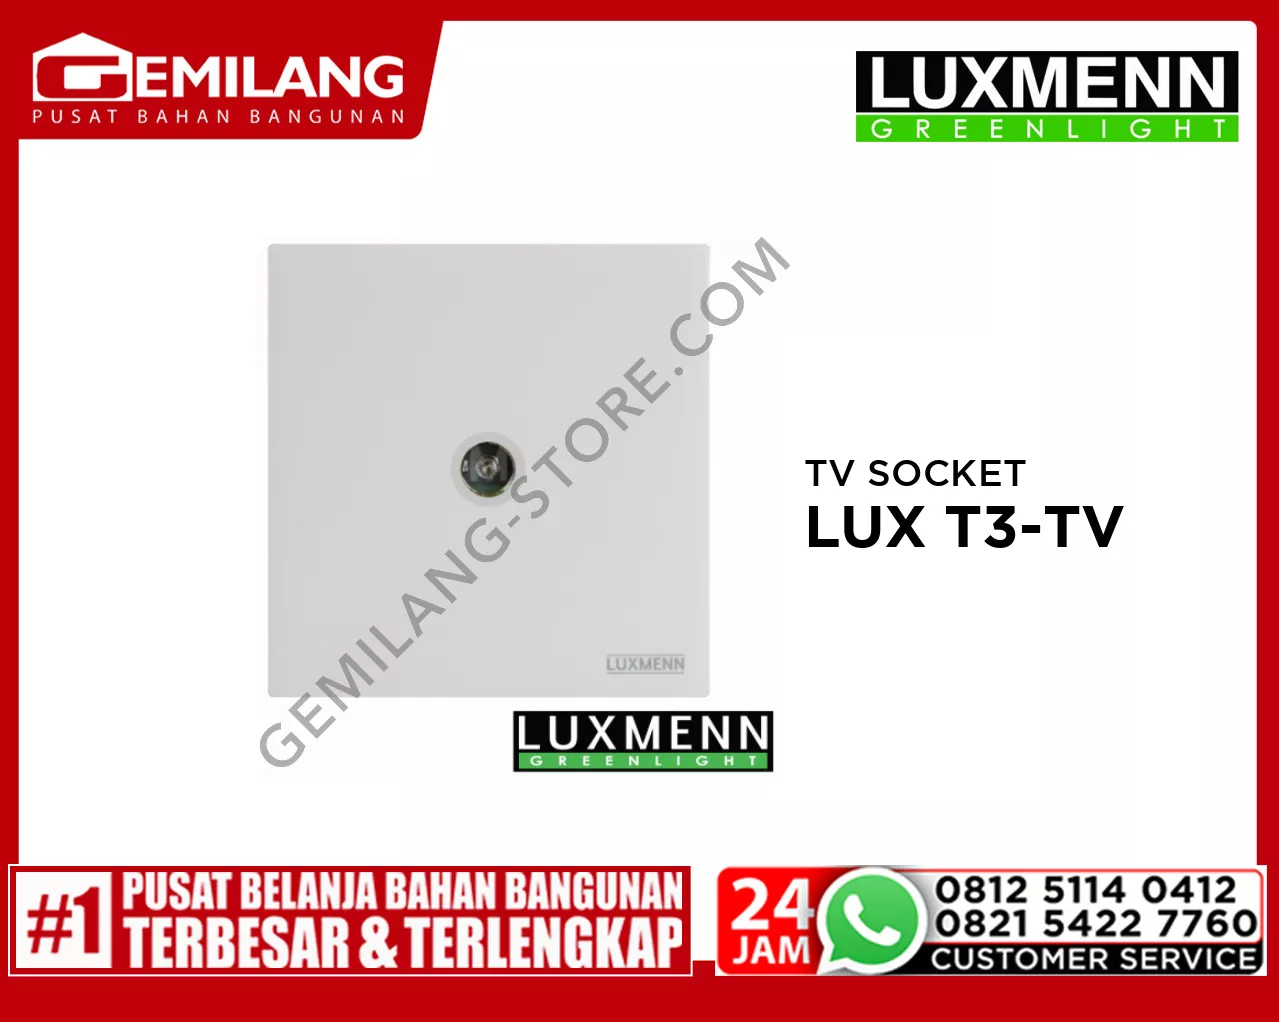 LUXMENN TV SOCKET LUX T3-TV WHITE